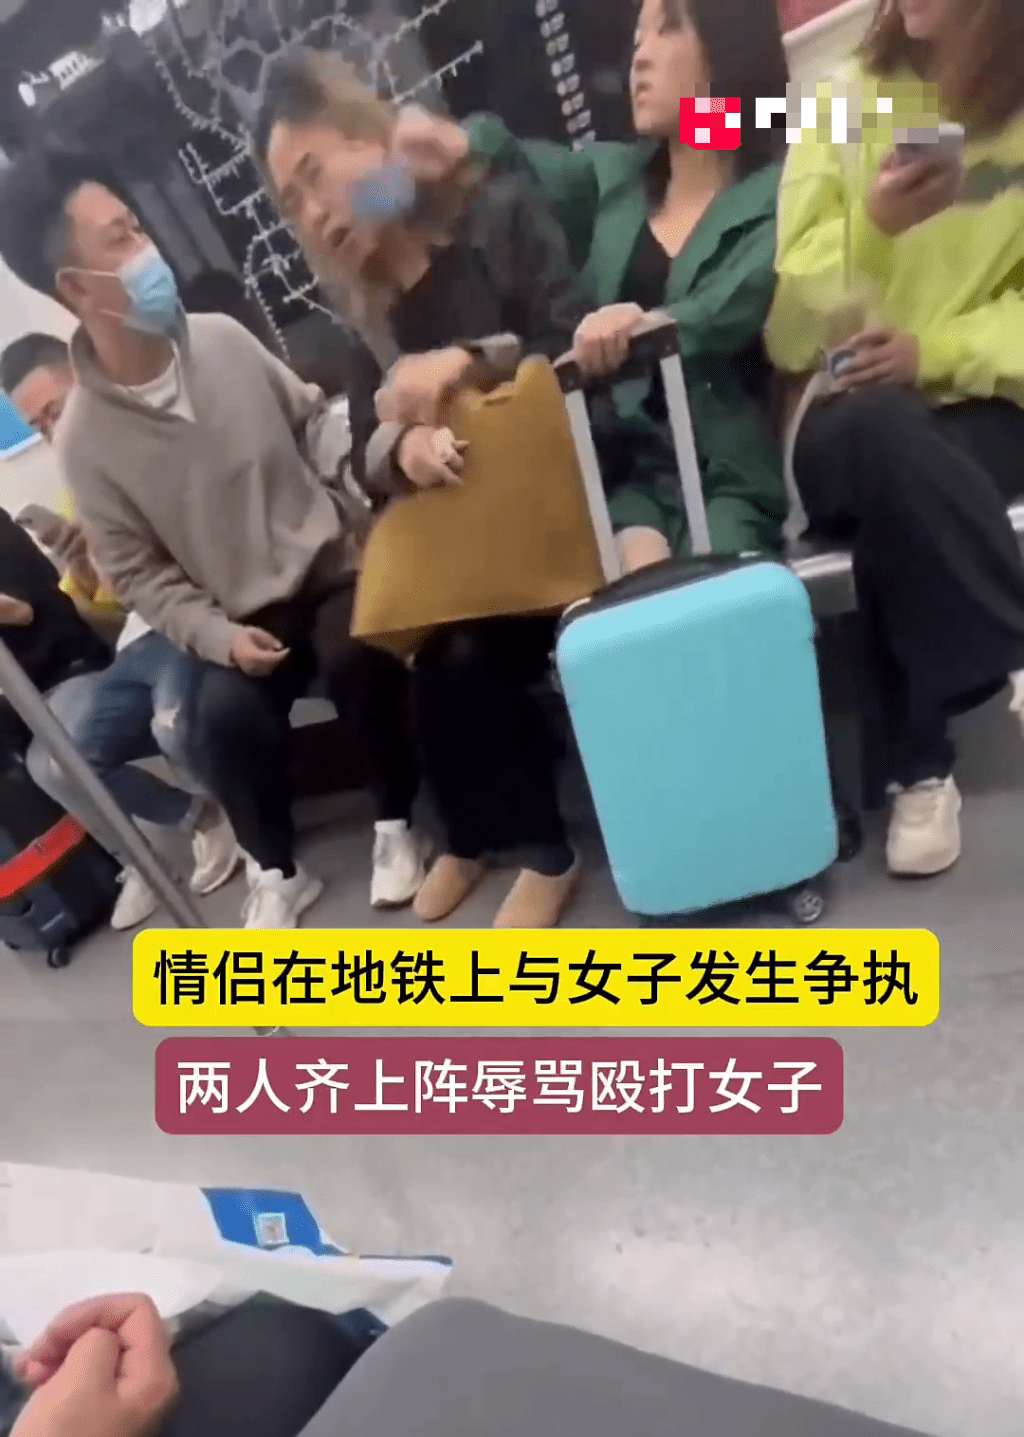 綠衫女乘客用持手機的手打向黑衫女的臉部。